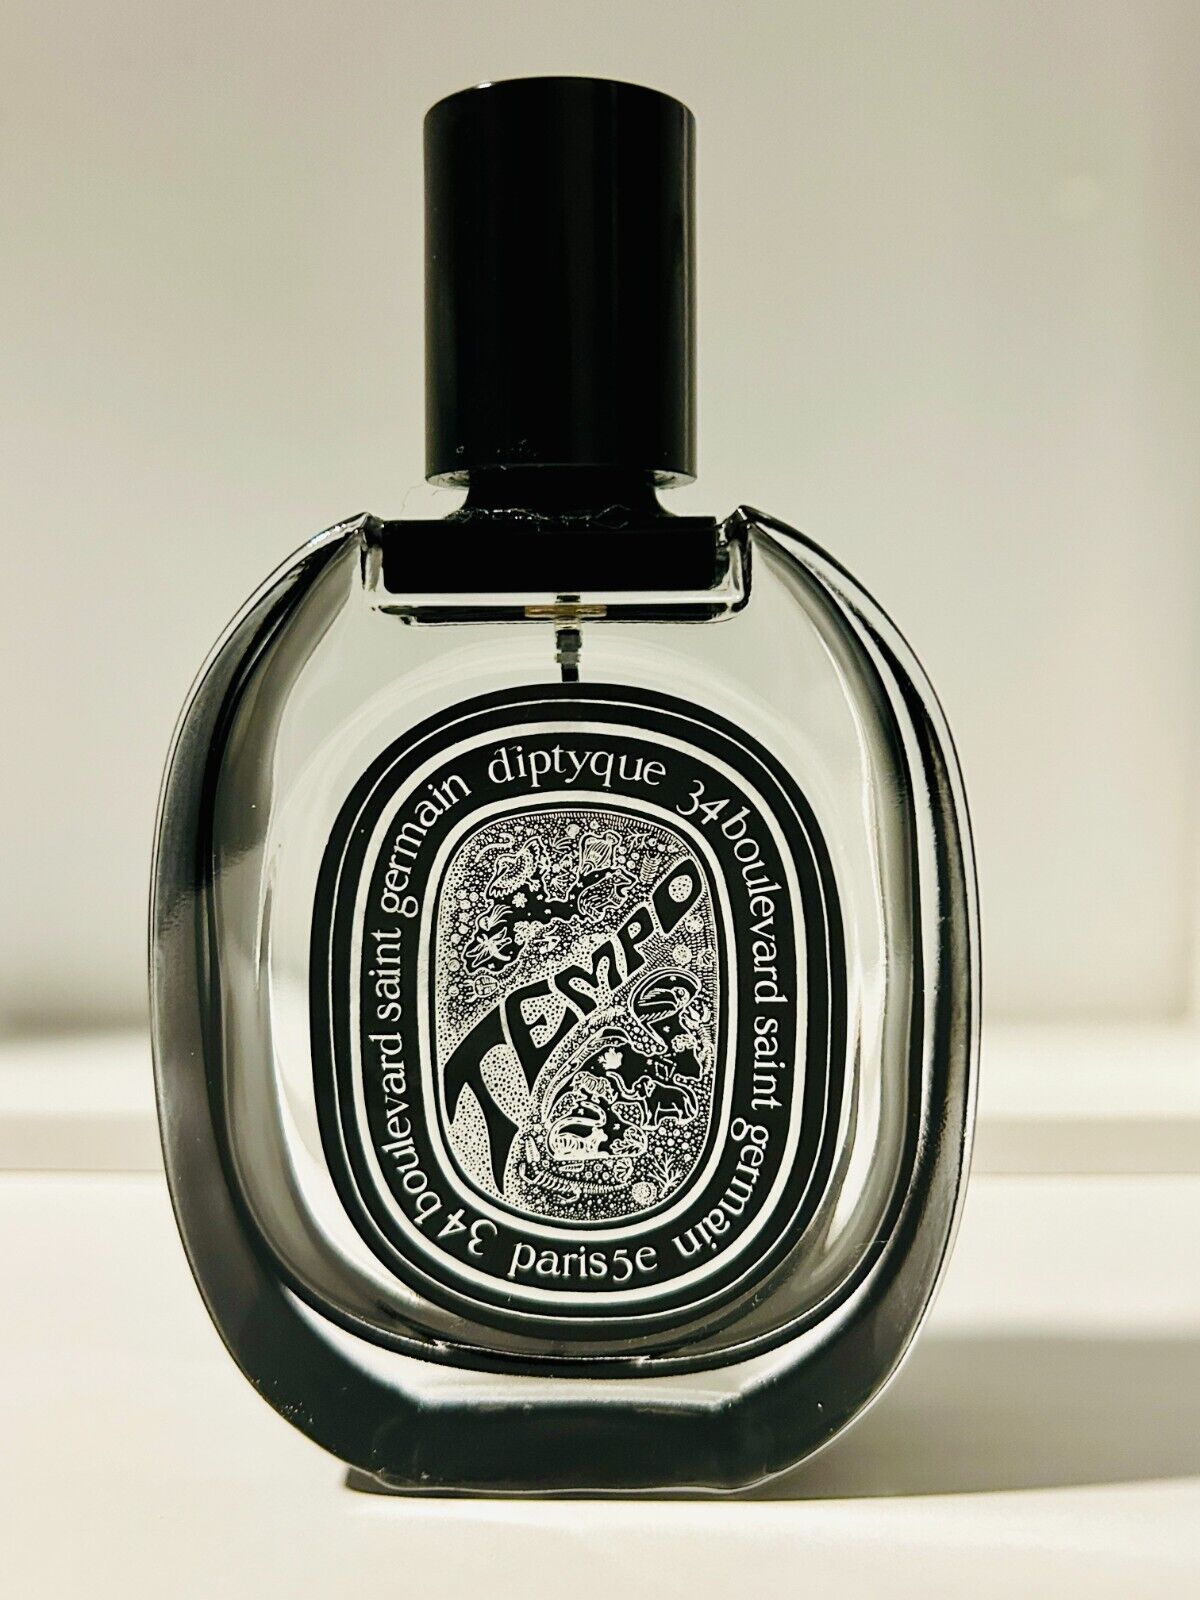 Diptyque Tempo Eau De Parfum 75ml Empty Bottle (No Perfume Inside)